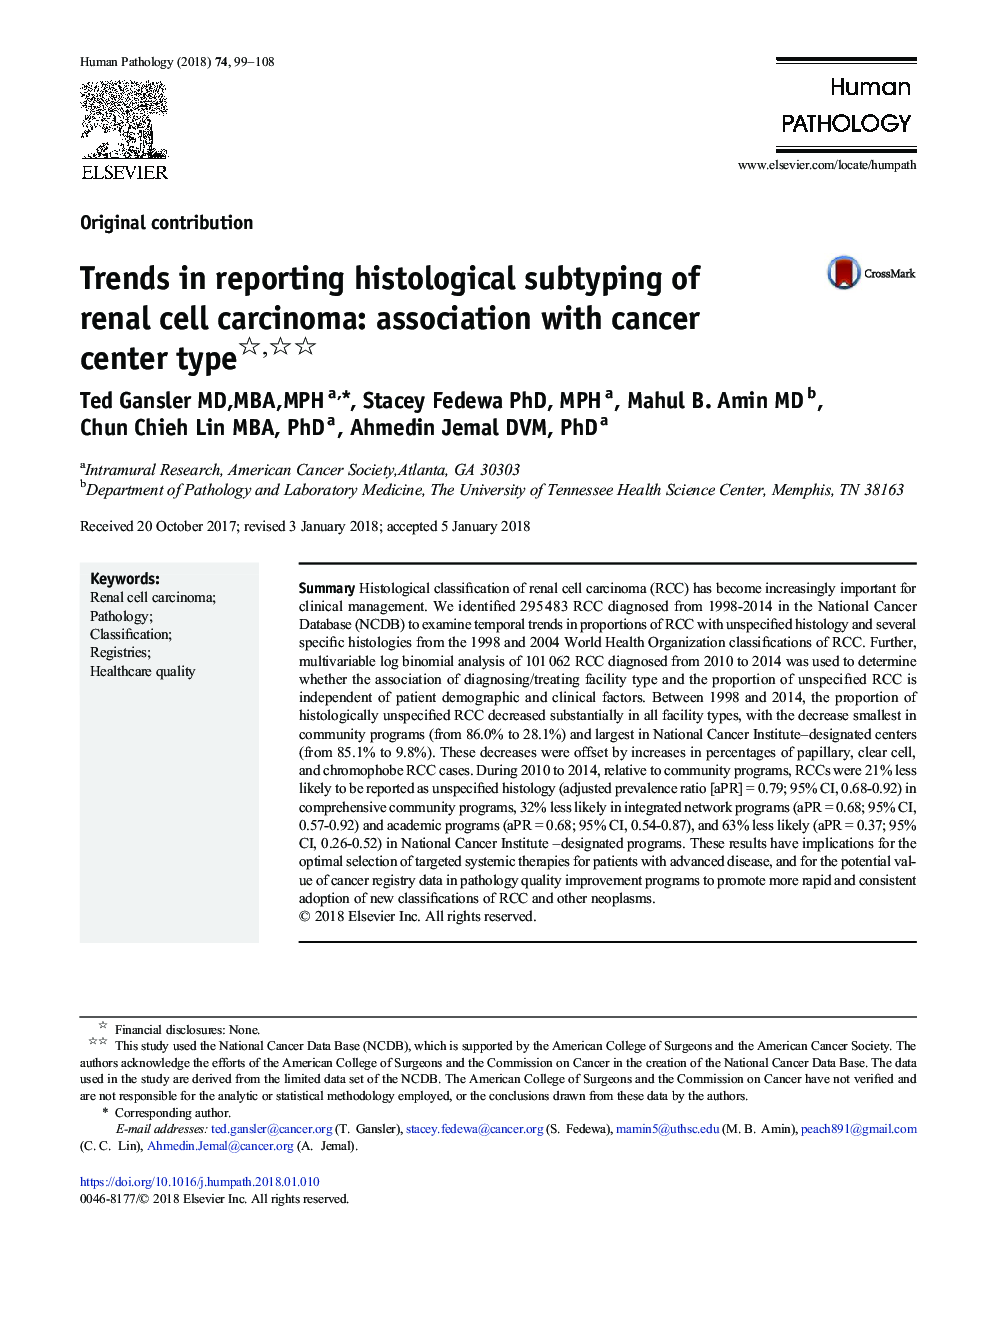 روند گزارش دهی بافت شناسی کارسینوم سلولی کلیه: ارتباط با نوع مرکز سرطان 